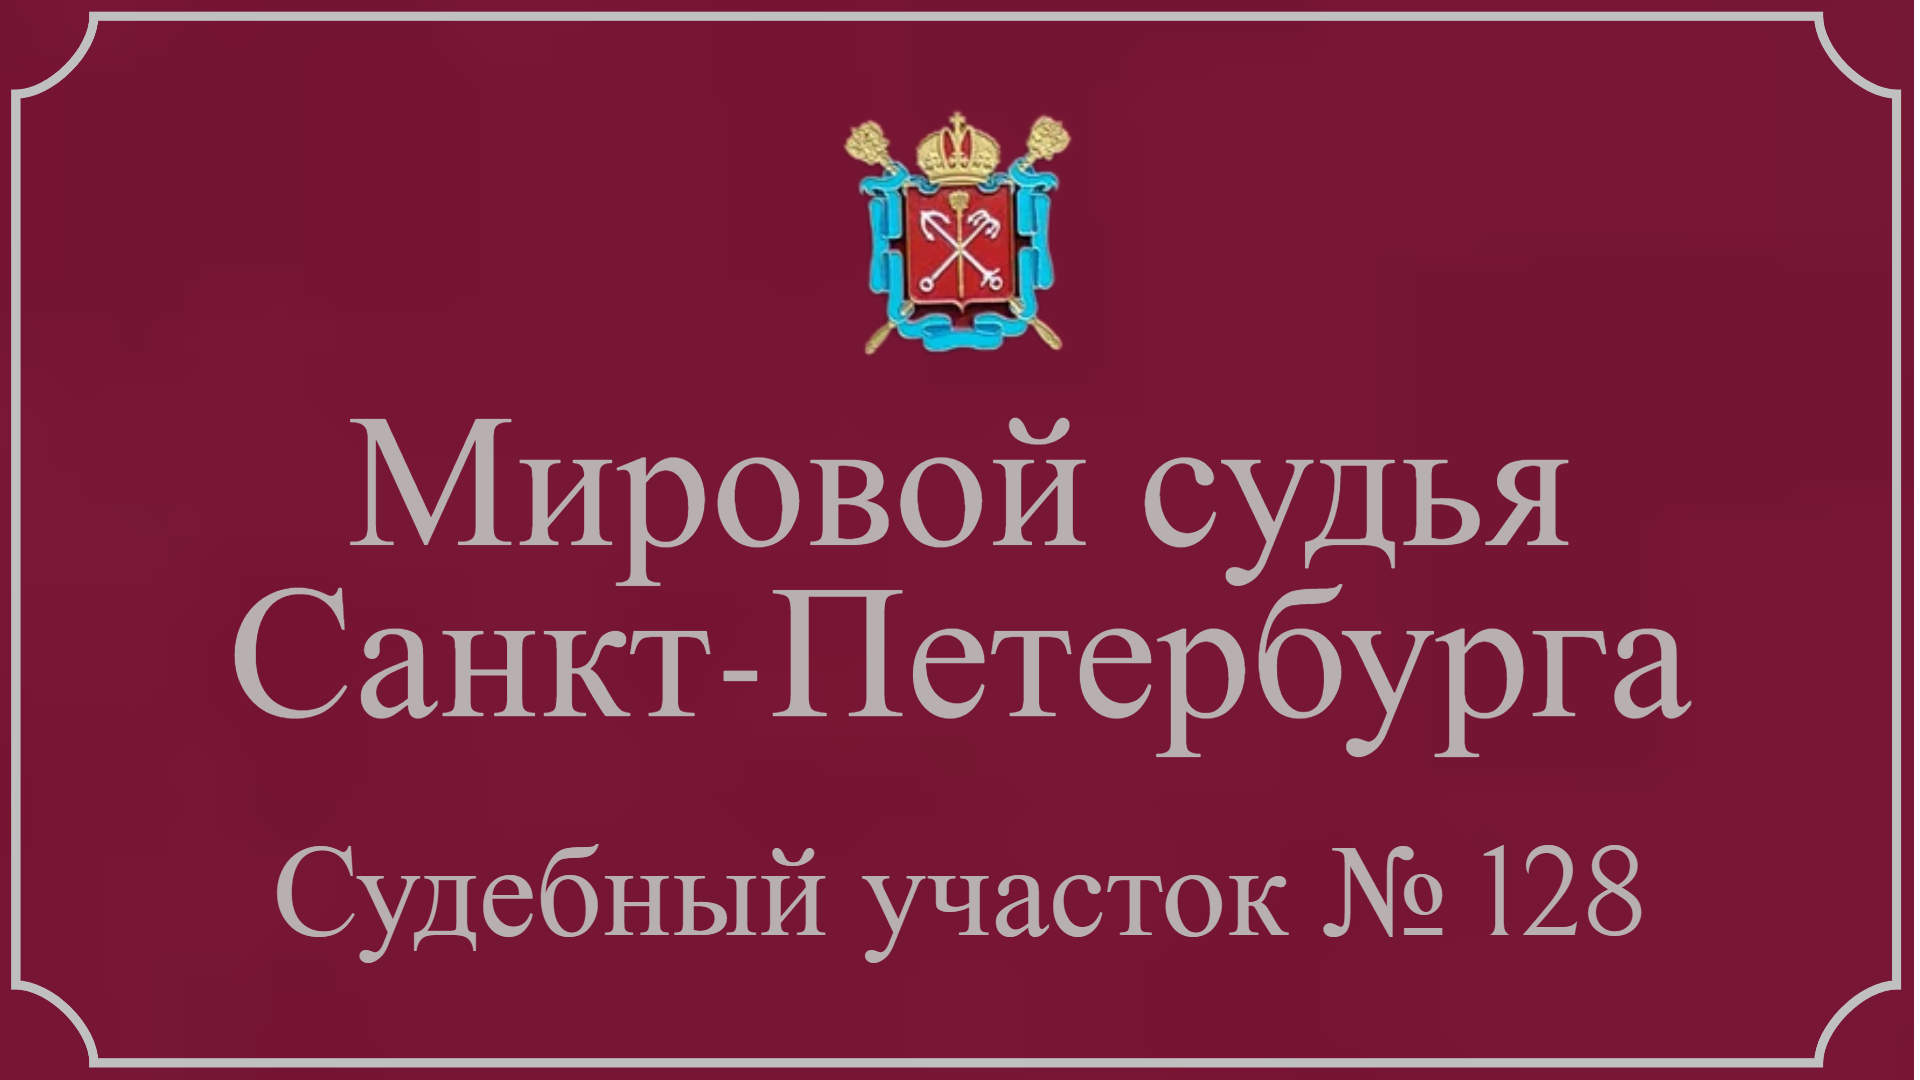 Информация по 128 судебному участку в Санкт-Петербурге.